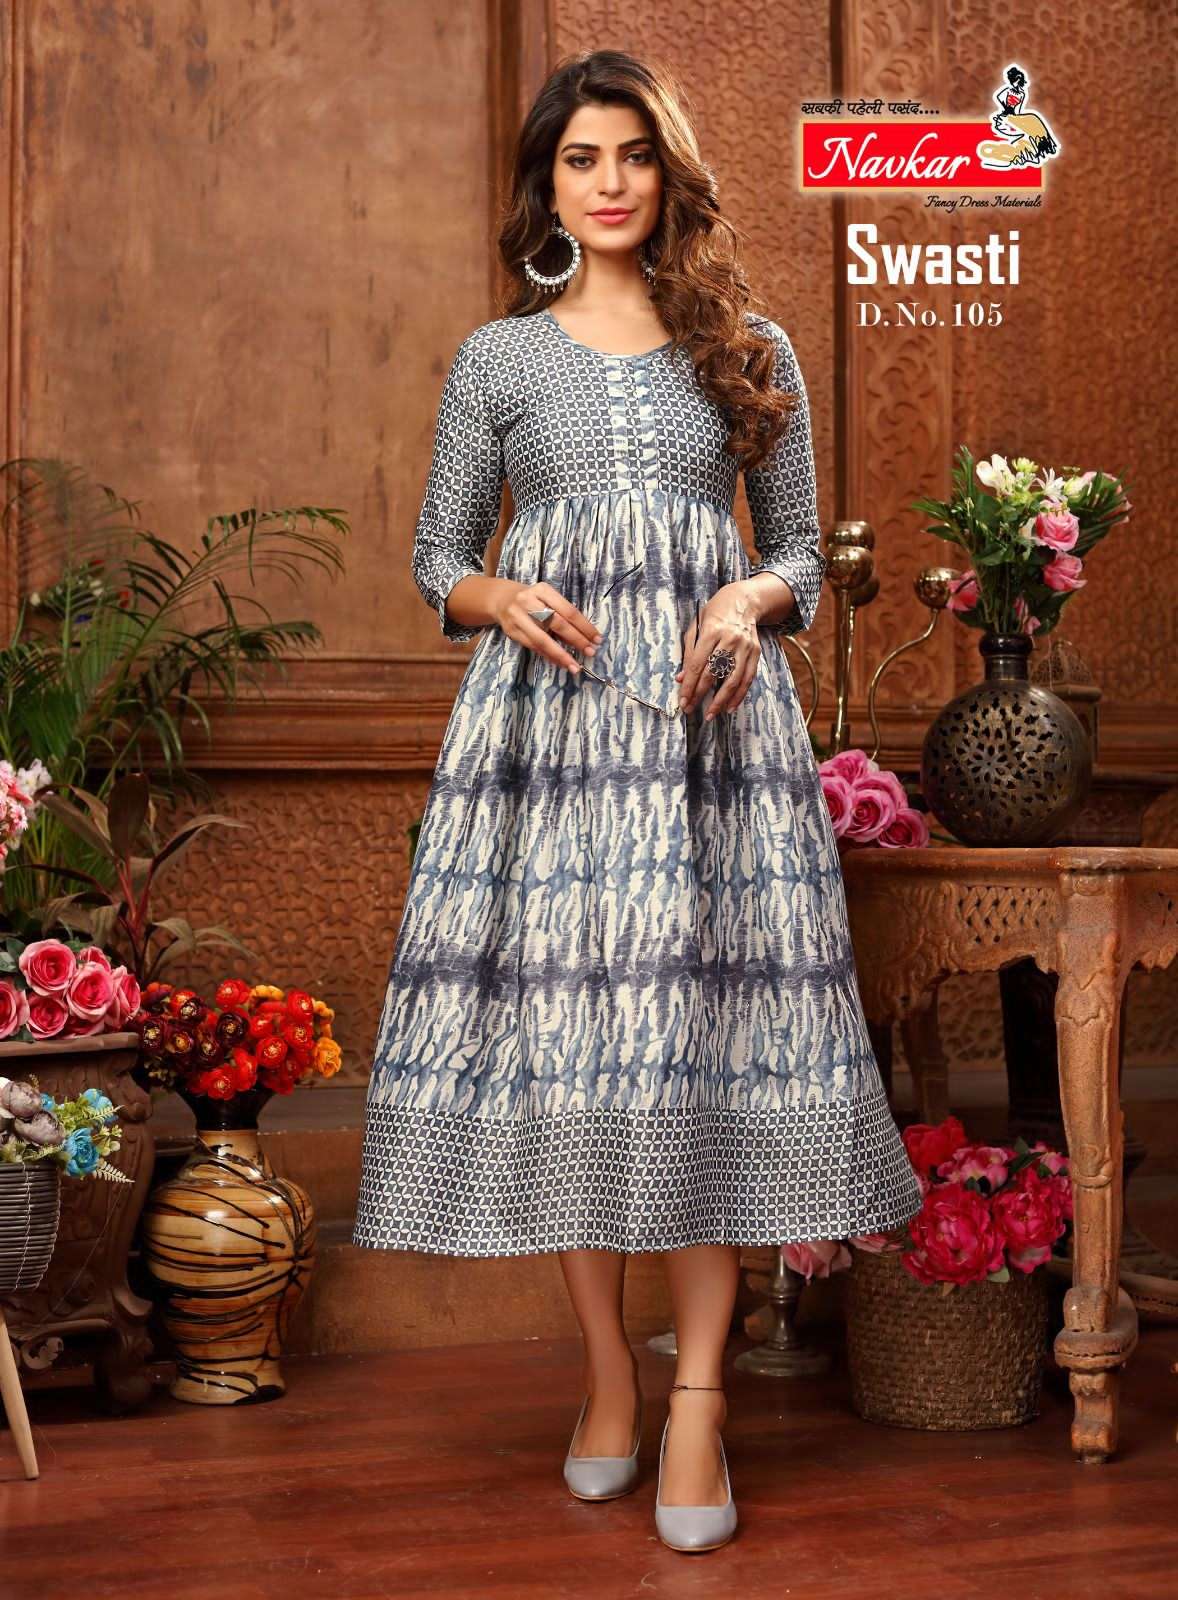 swasti by navkar rayon fancy casual wear kurtis